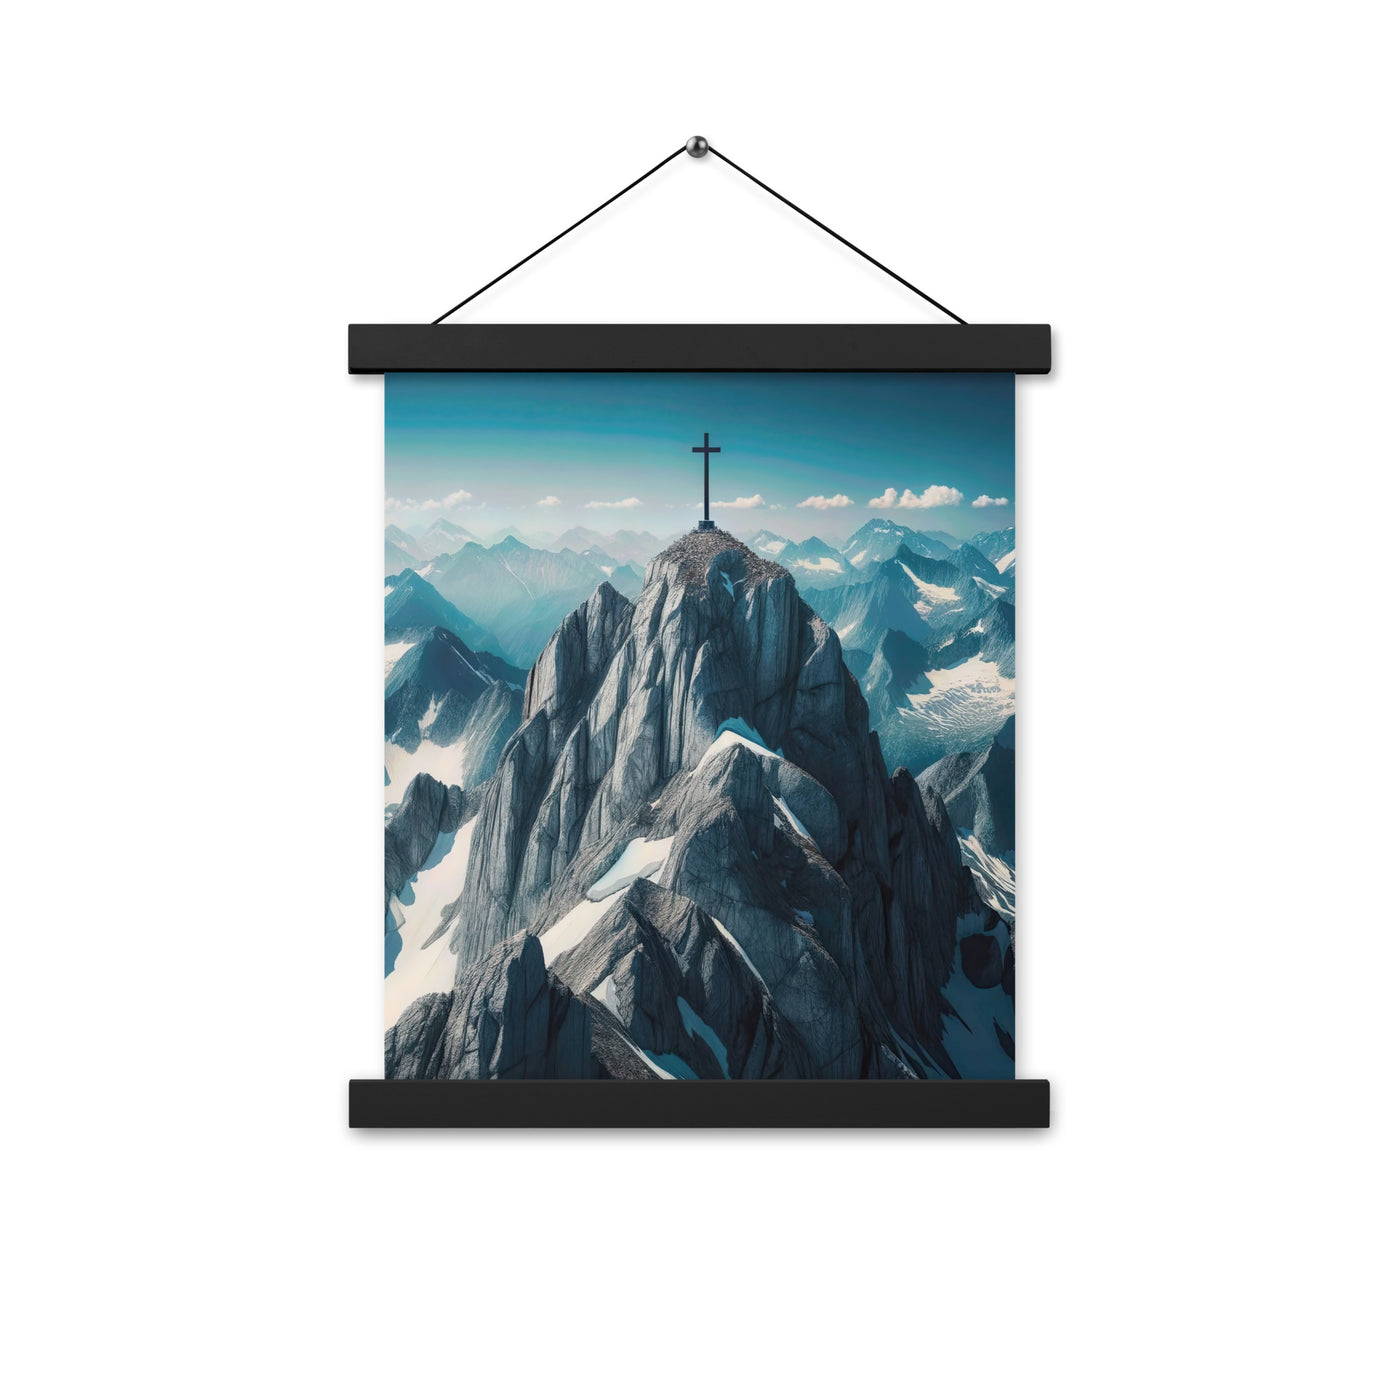 Foto der Alpen mit Gipfelkreuz an einem klaren Tag, schneebedeckte Spitzen vor blauem Himmel - Enhanced Matte Paper Poster With Hanger berge xxx yyy zzz 27.9 x 35.6 cm